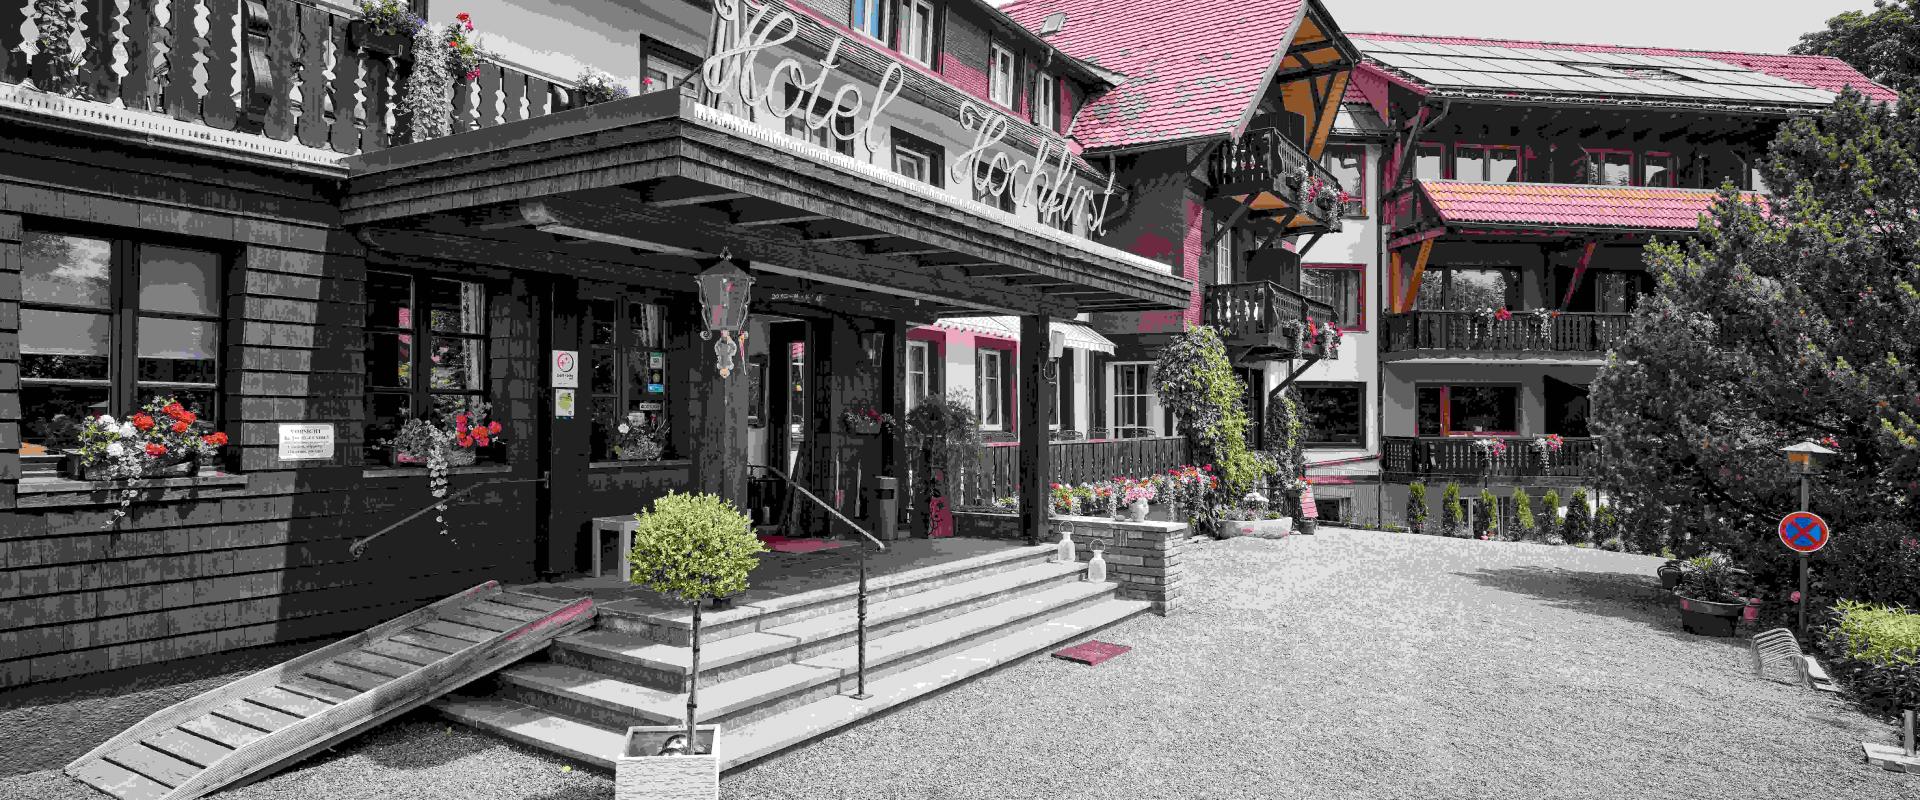 30330 Biker Hotel Hochfirst im Schwarzwald.jpg